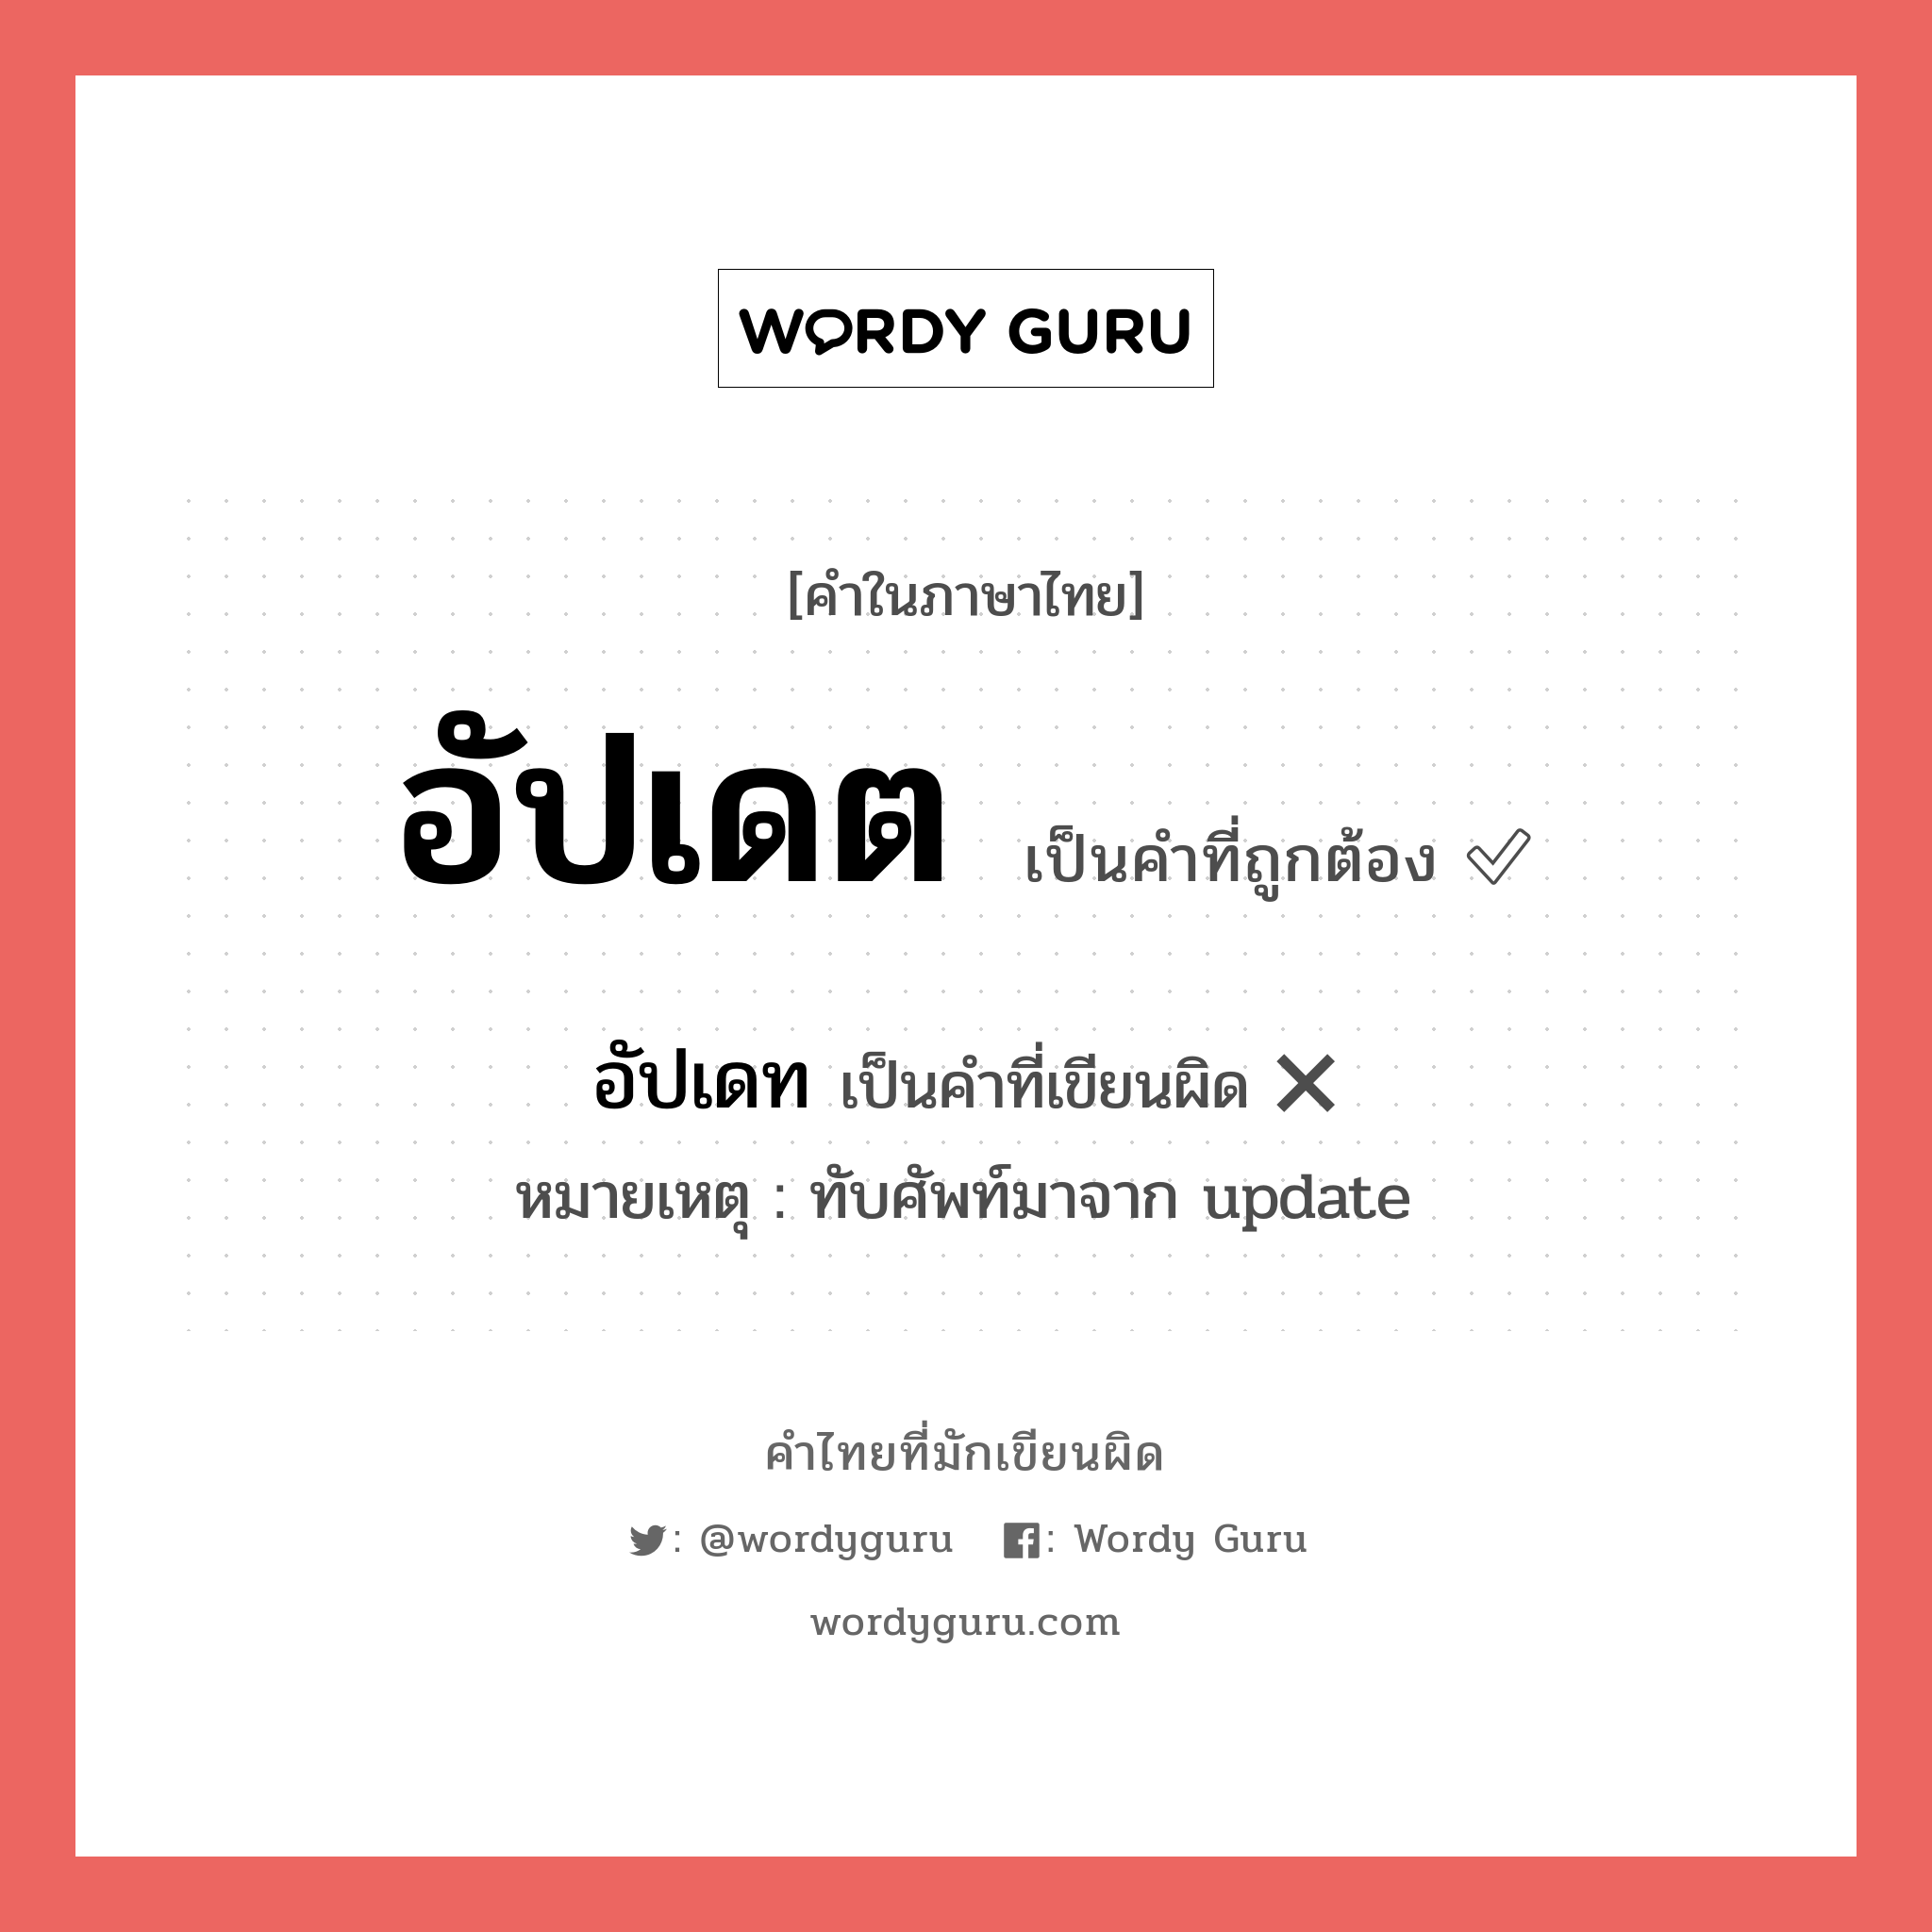 อัปเดต หรือ อัพเดท เขียนยังไง? คำไหนเขียนถูก?, คำในภาษาไทยที่มักเขียนผิด อัปเดต คำที่ผิด ❌ อัปเดท หมายเหตุ ทับศัพท์มาจาก update